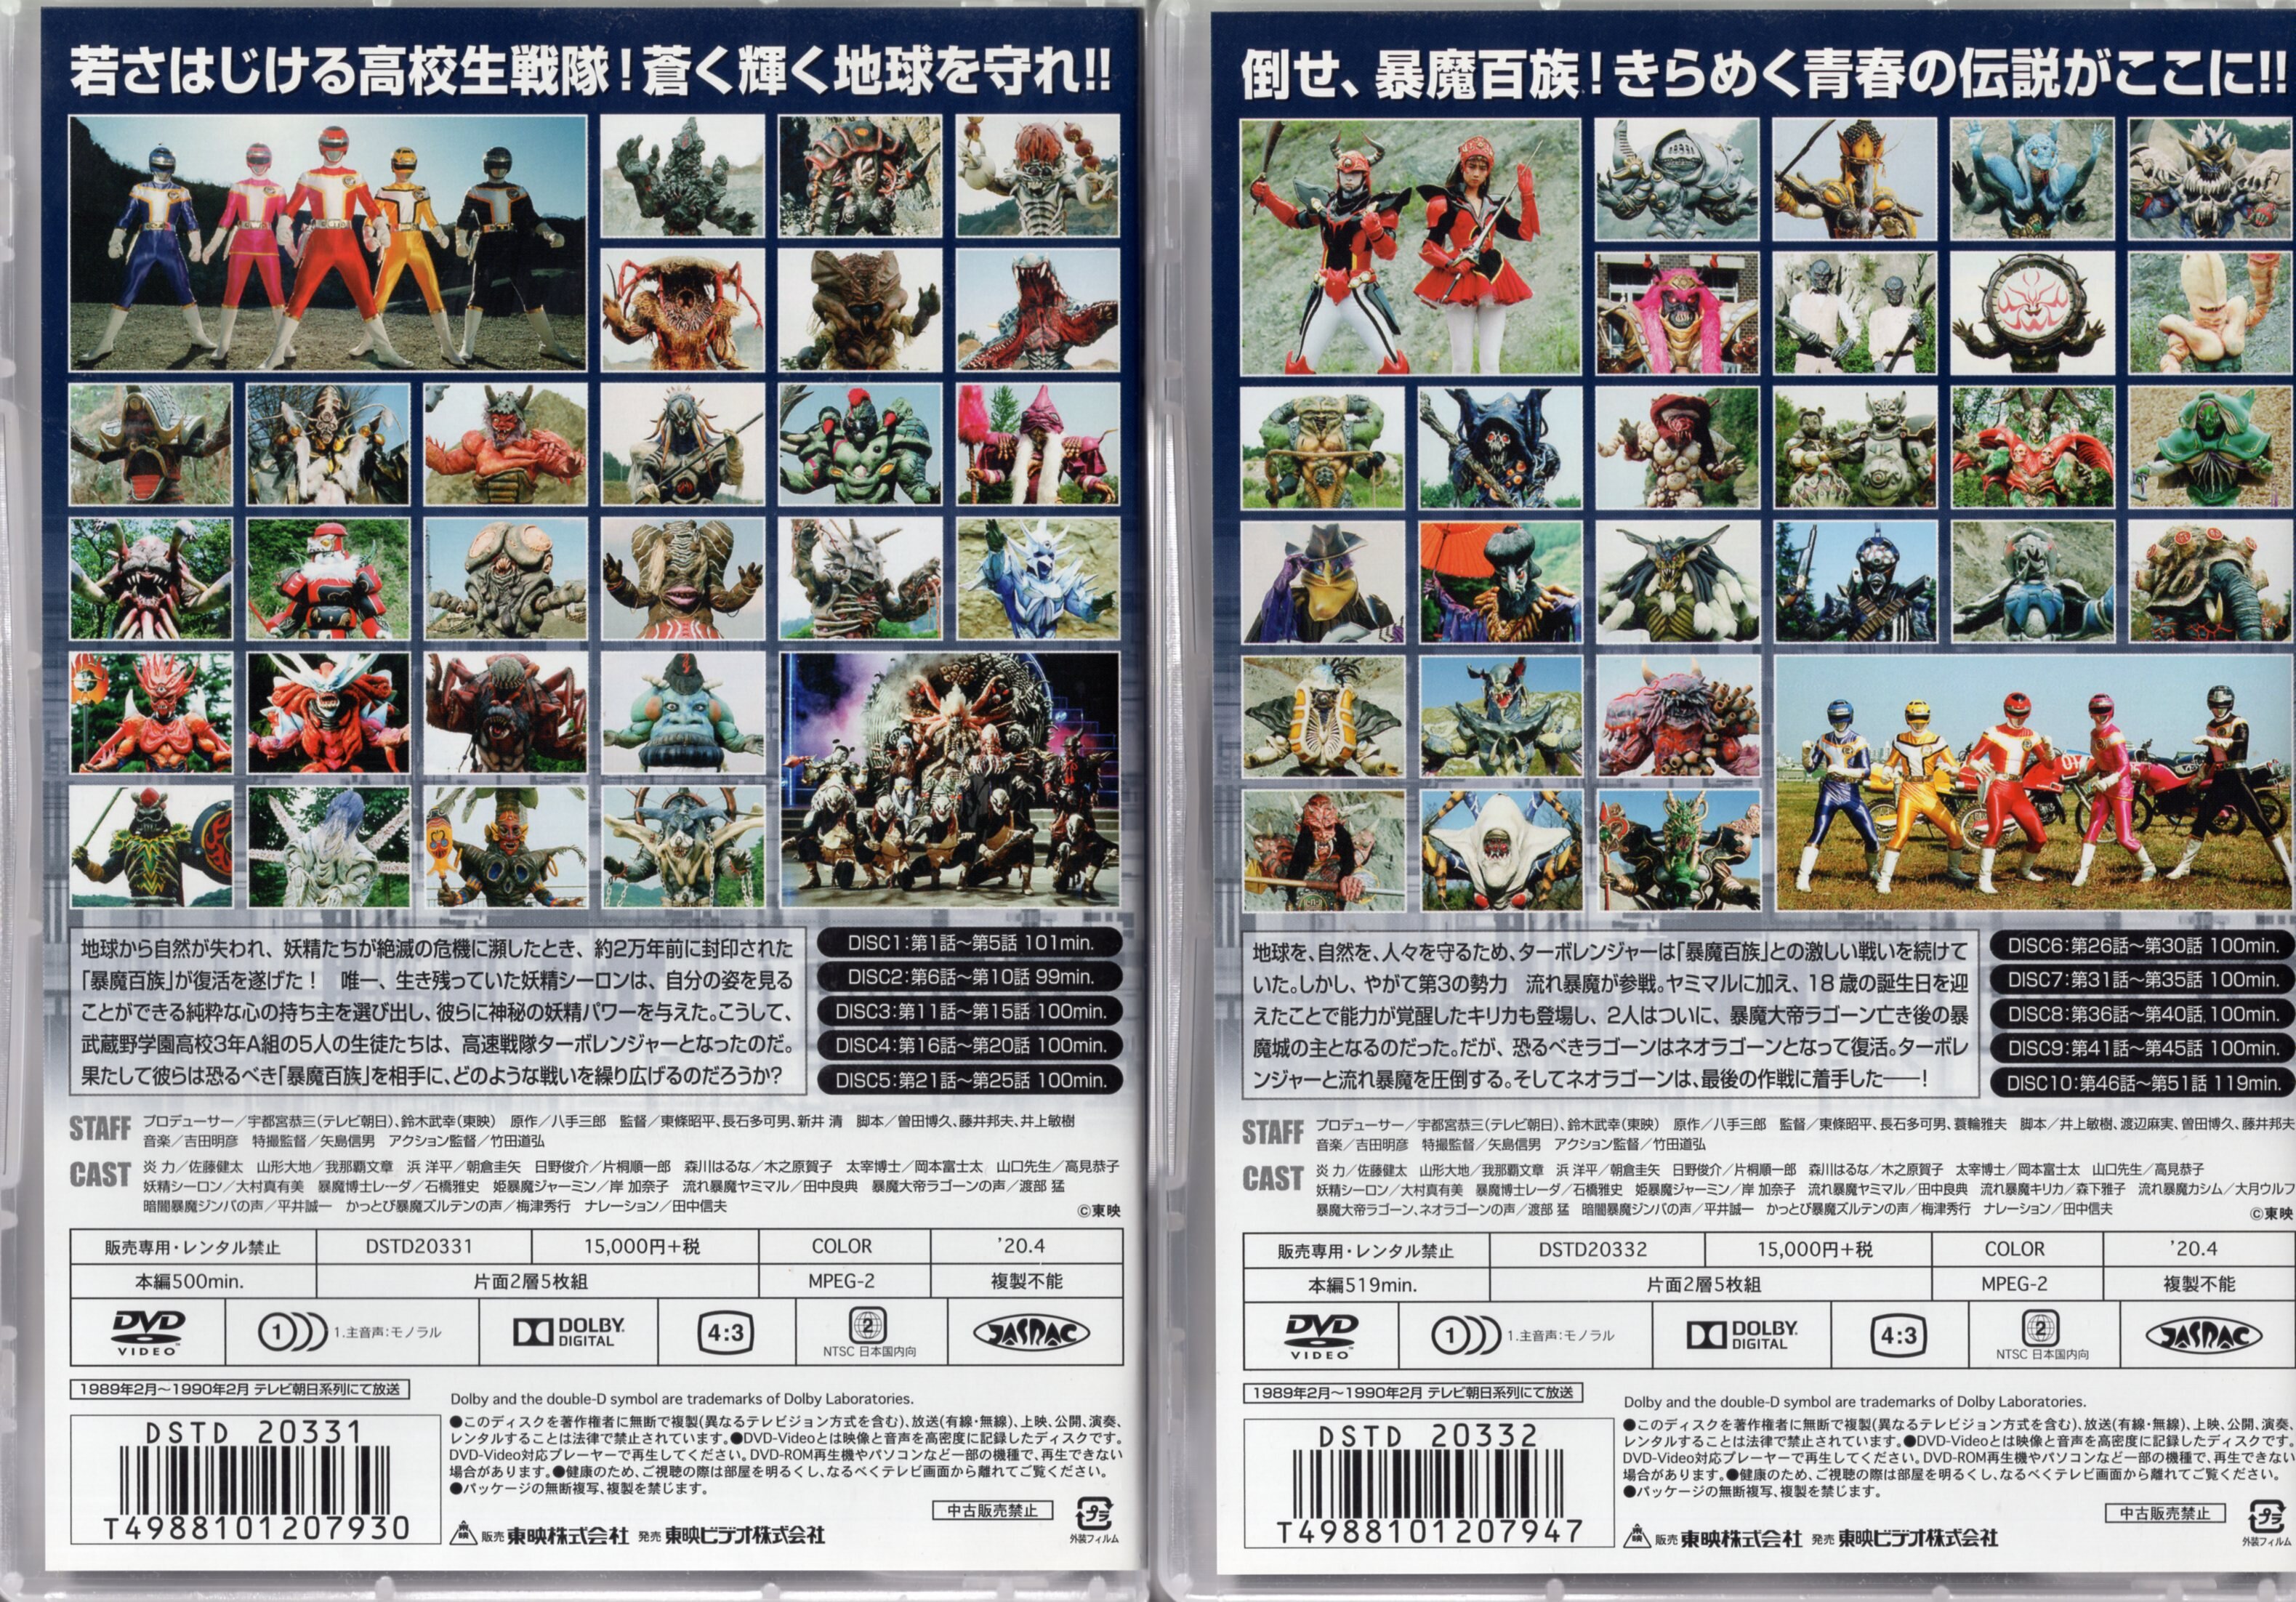 東映 特撮DVD 初回 高速戦隊ターボレンジャー DVD COLLECTION 全2巻